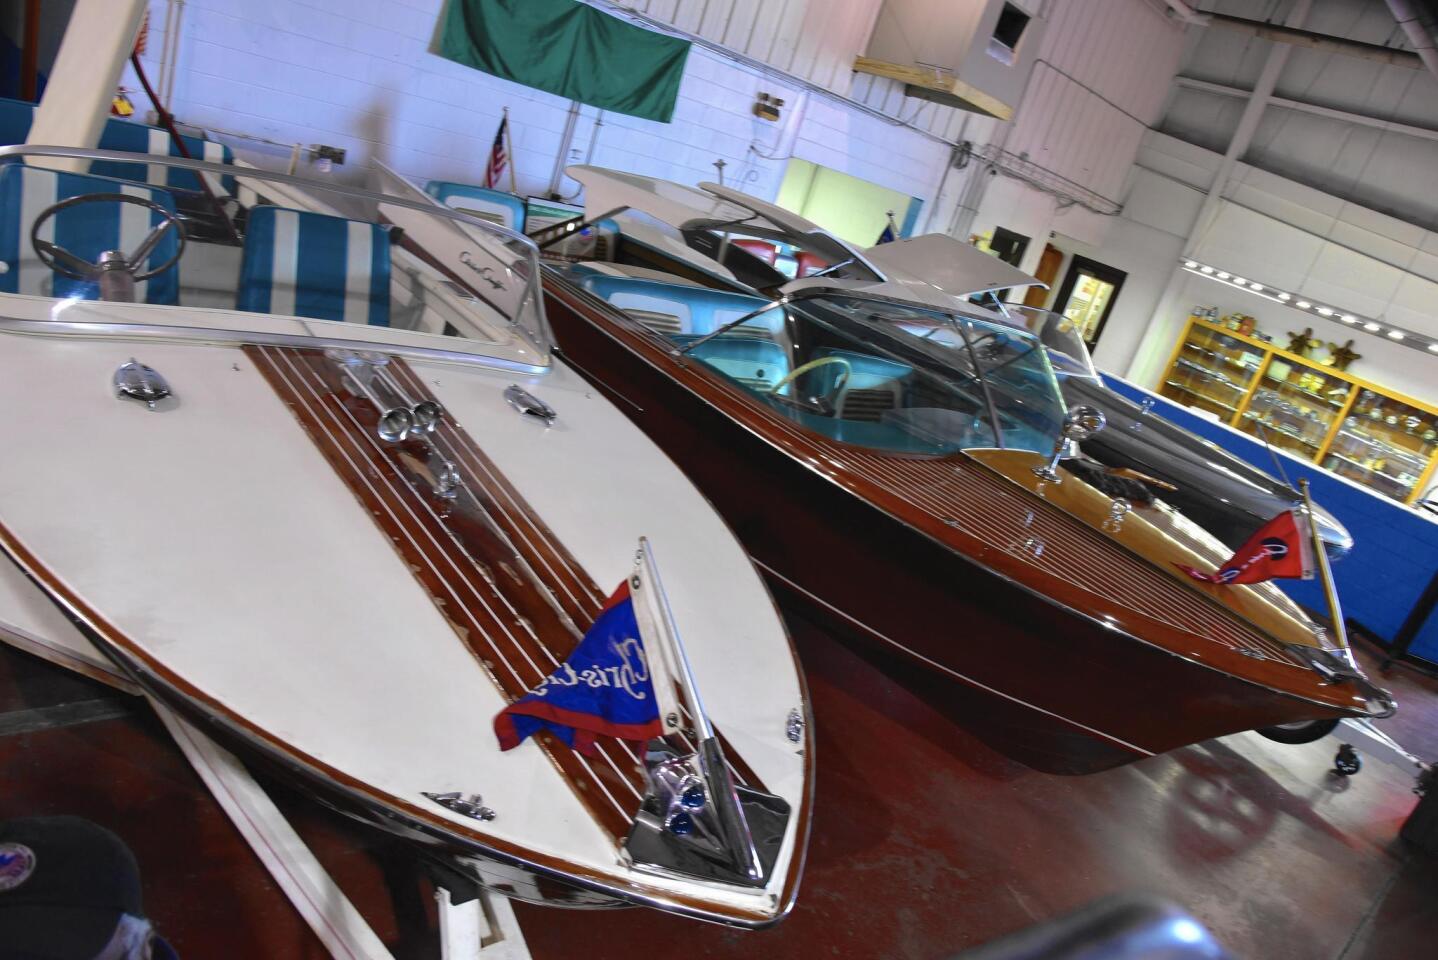 Vintage boats